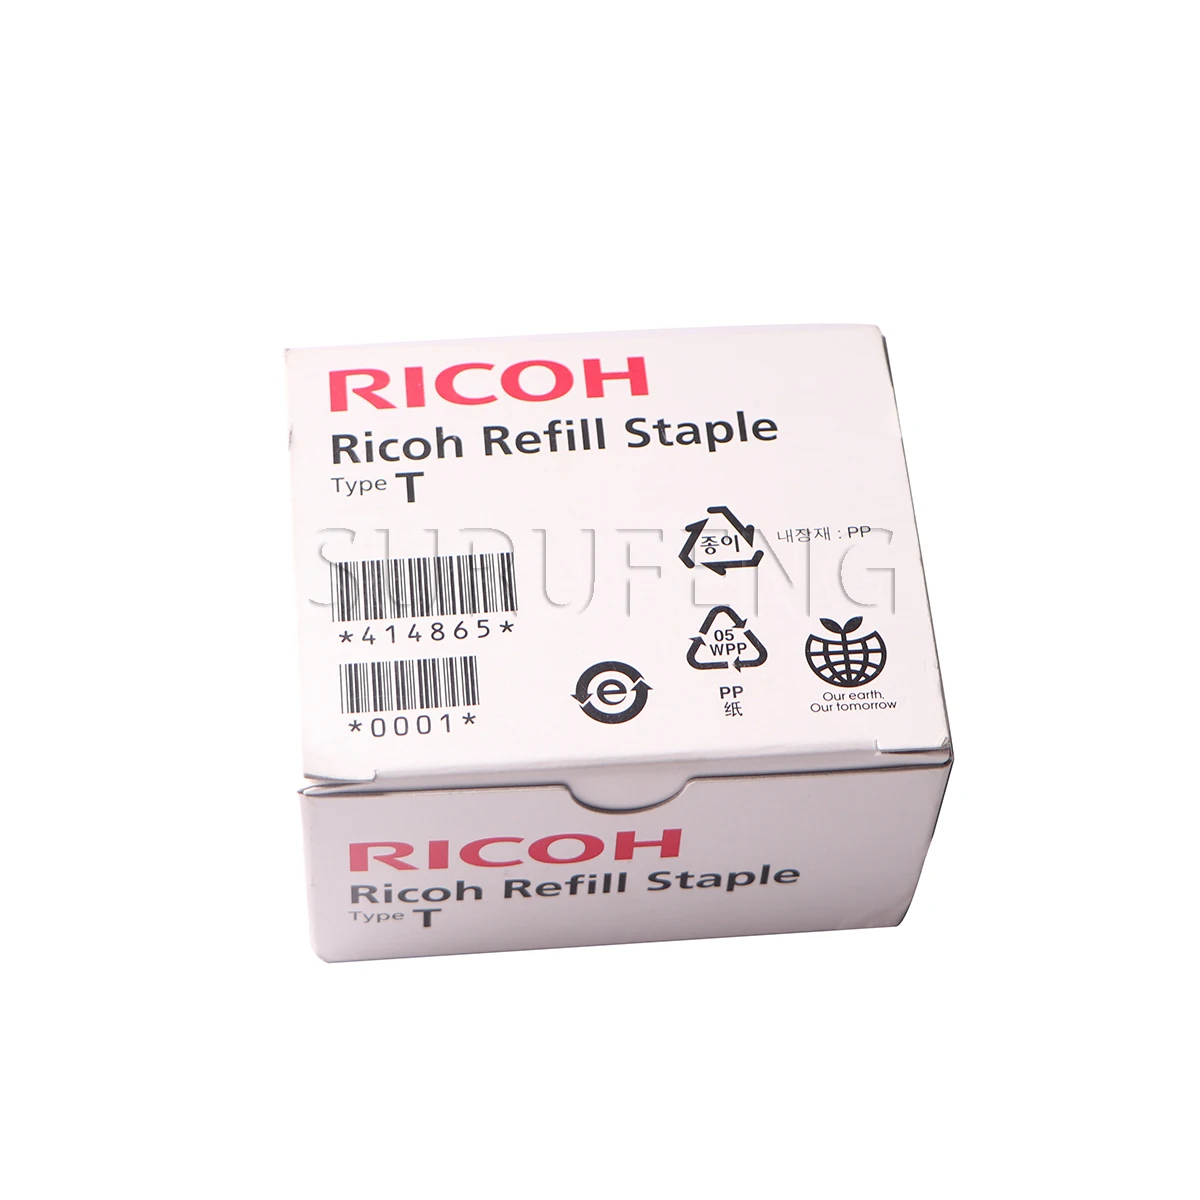 414865 Staple Refill Type T for Ricoh 414859  Staple Type T